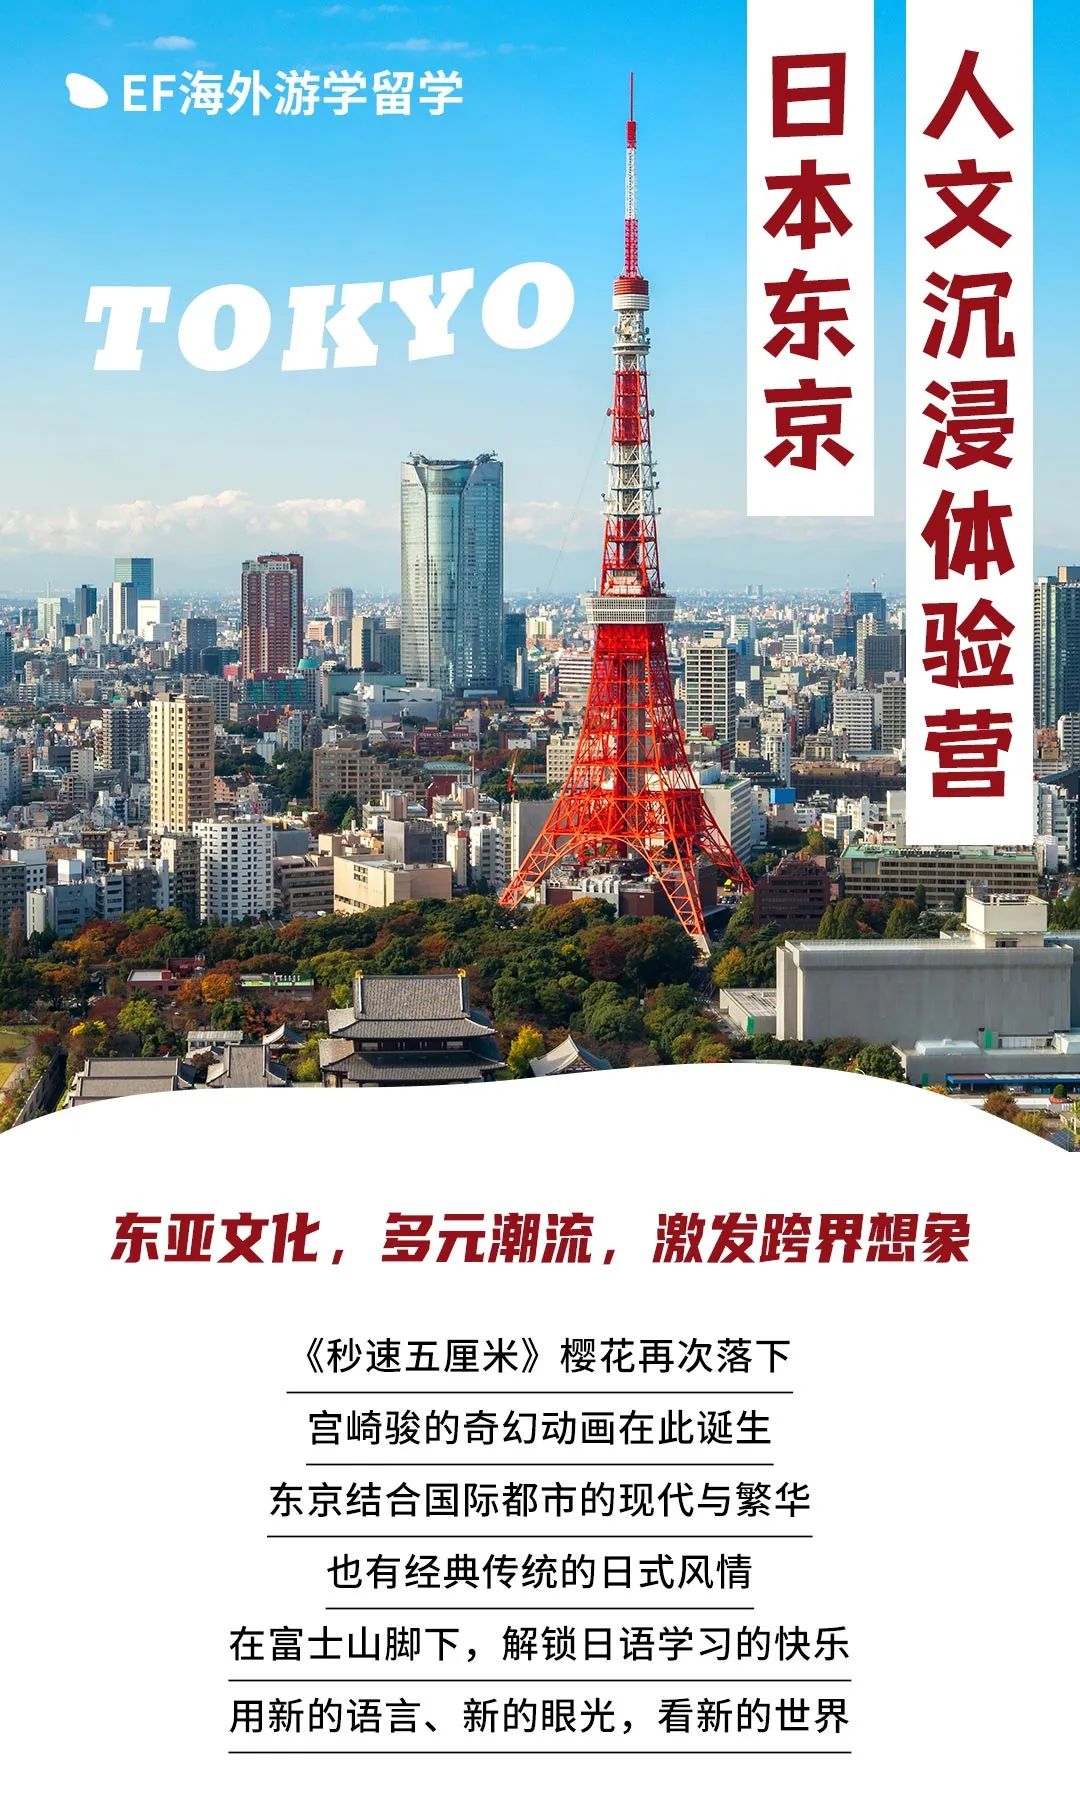 东京和风体验营 | 解锁 “殿堂级”日语学习，在樱花之国邂逅日式浪漫